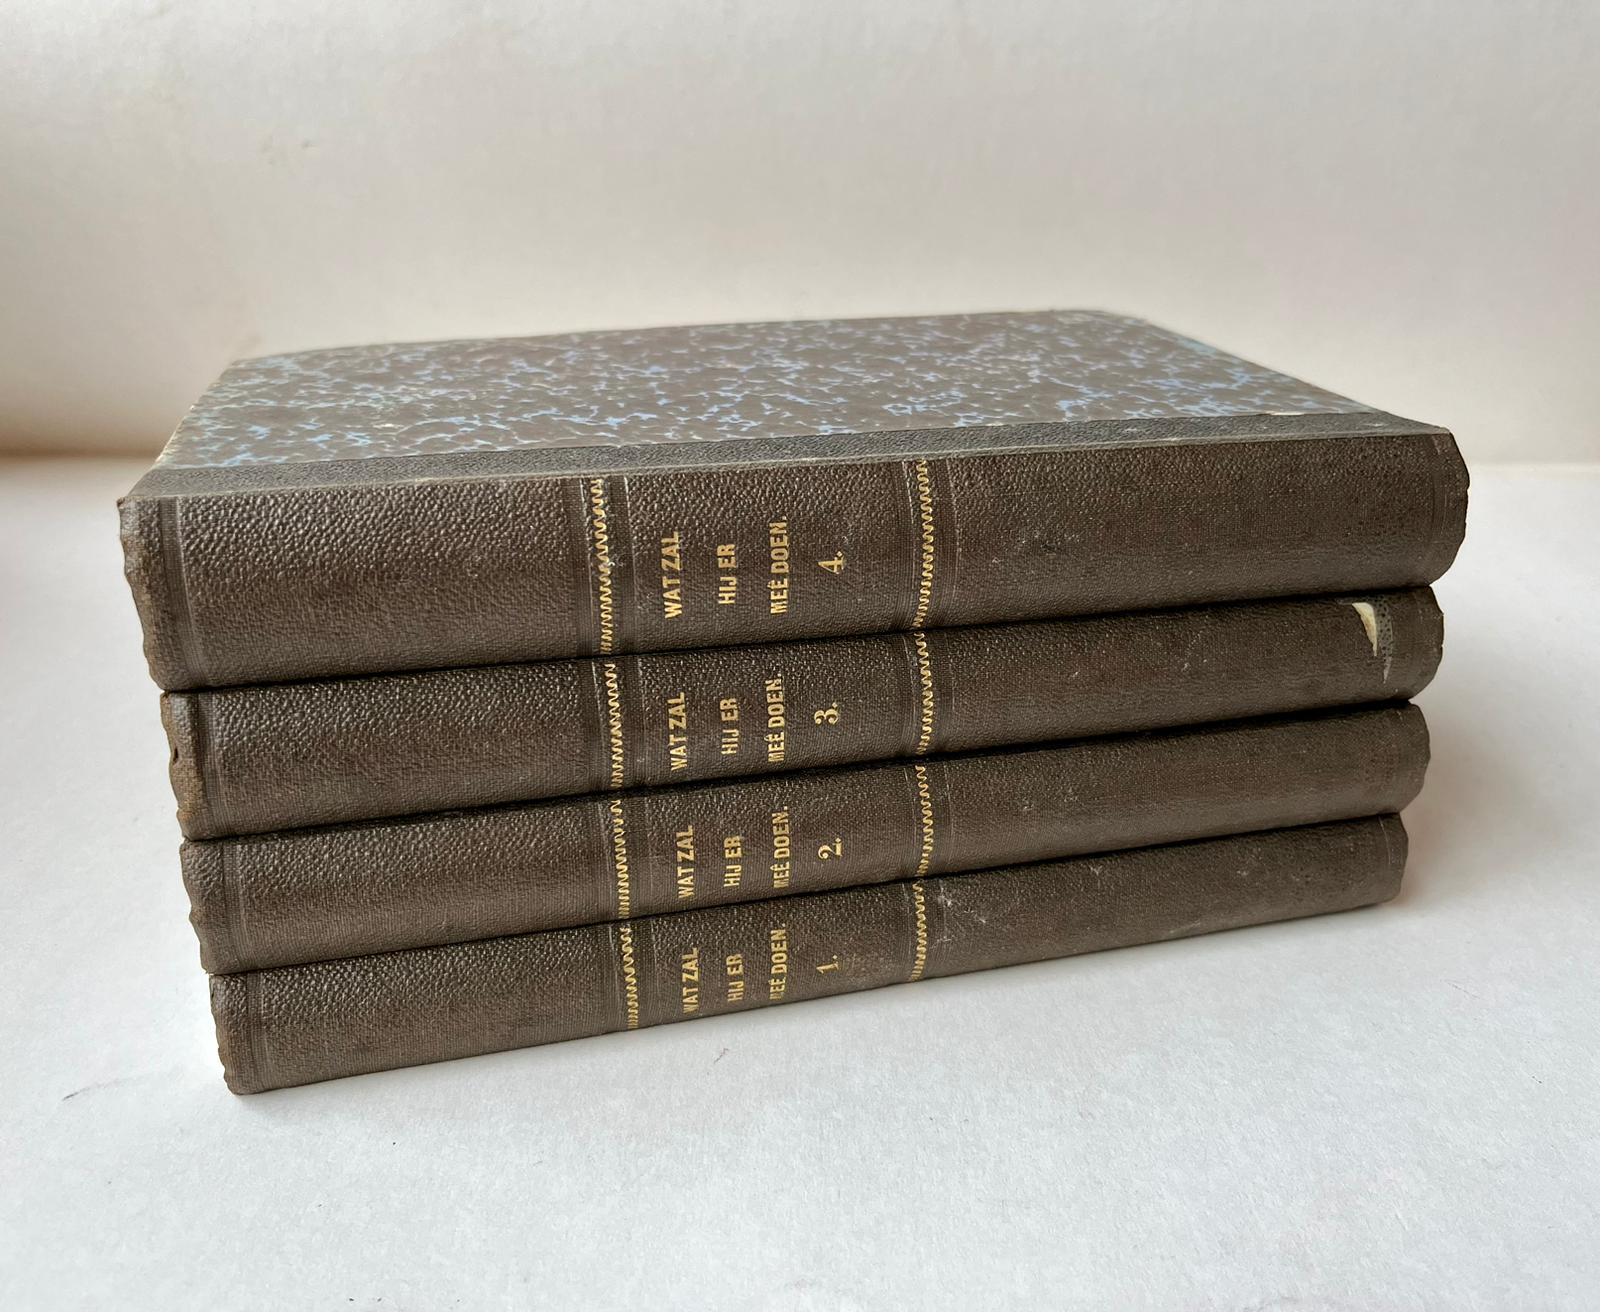 [Rare literature 1858-1859] Wat zal hij er meê doen? Vertaald uit het Engels door T. van Westrheene, Wz. Amsterdam, Gebroeders Binger, 1858-1859. [4 volumes] Illustrated.